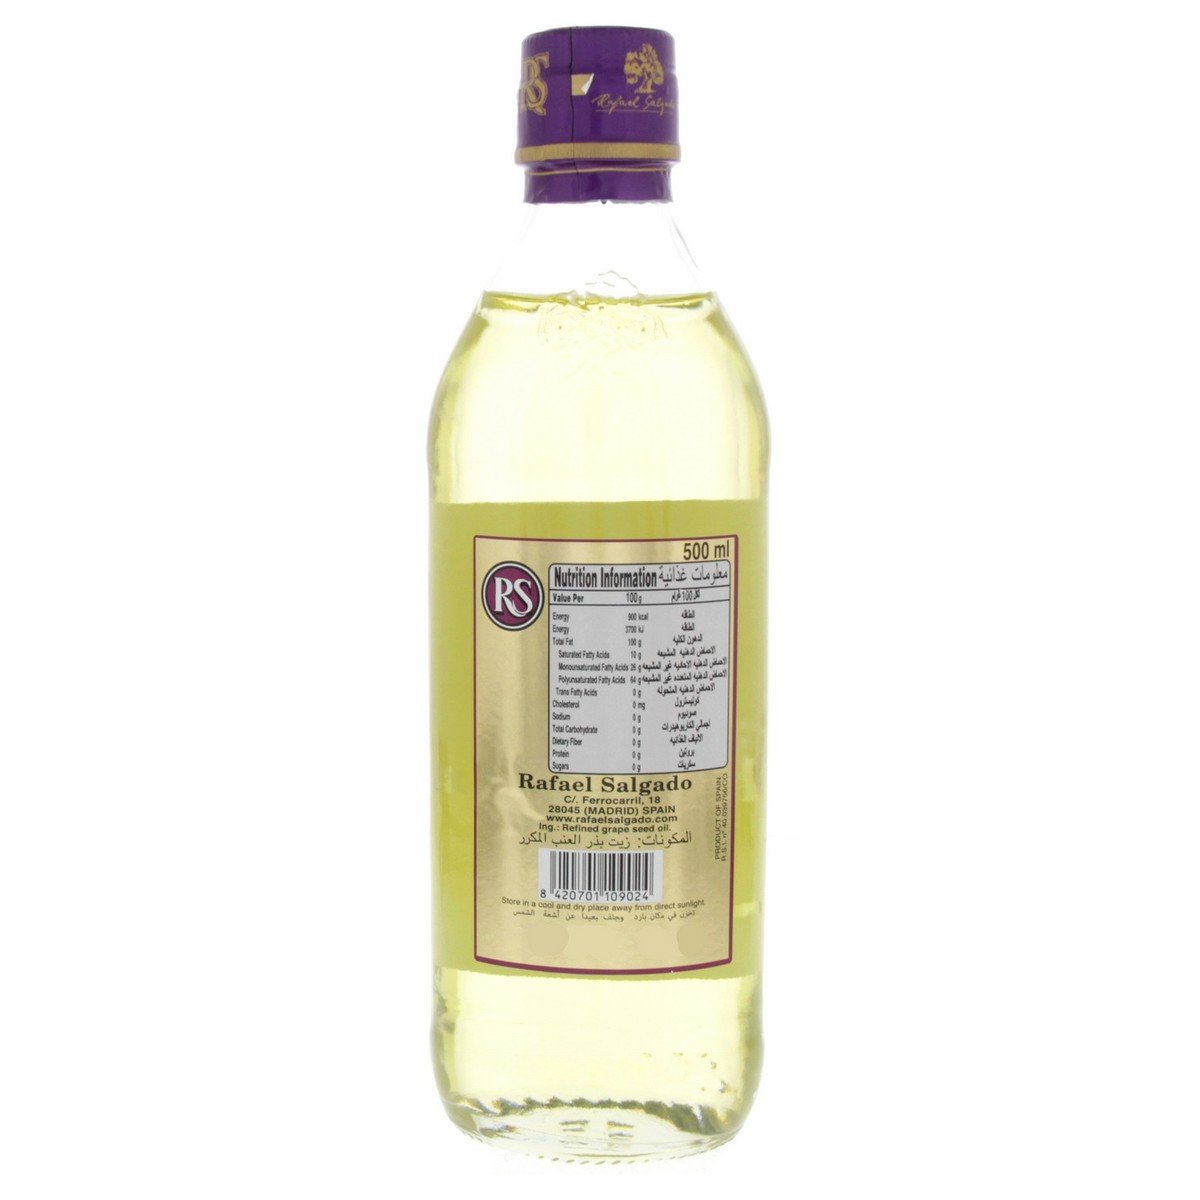 Rafael Salgado Grape Seed Oil 500 ml